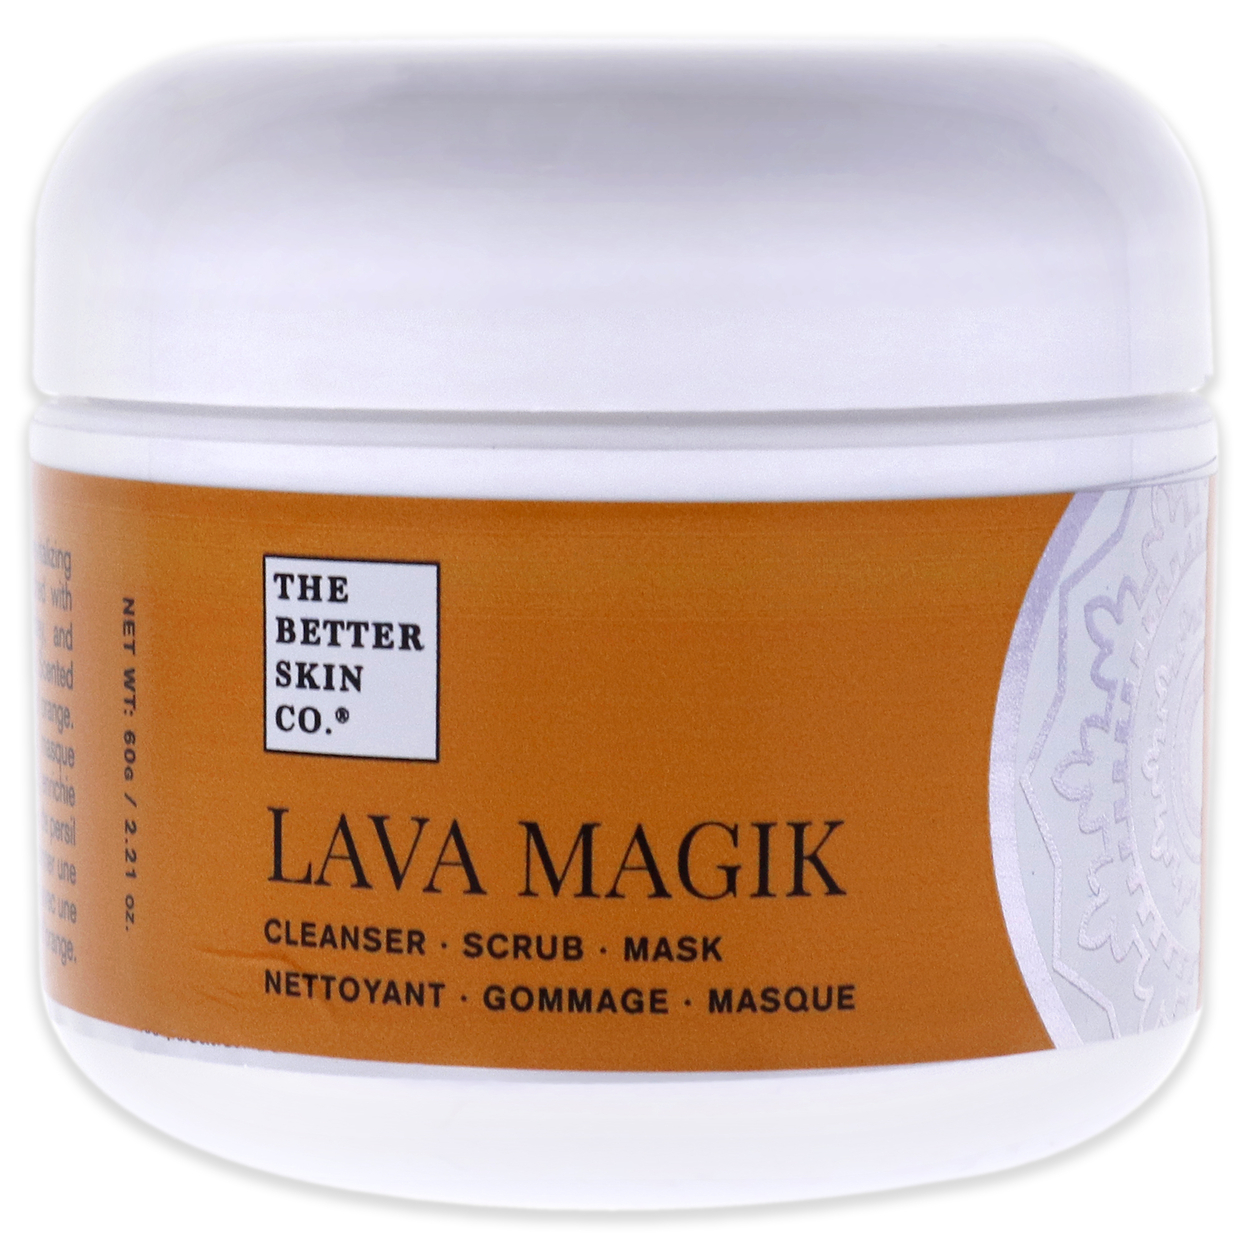 The Better Skin Lava Magik 3 In 1 Cleanser 2.21 Oz